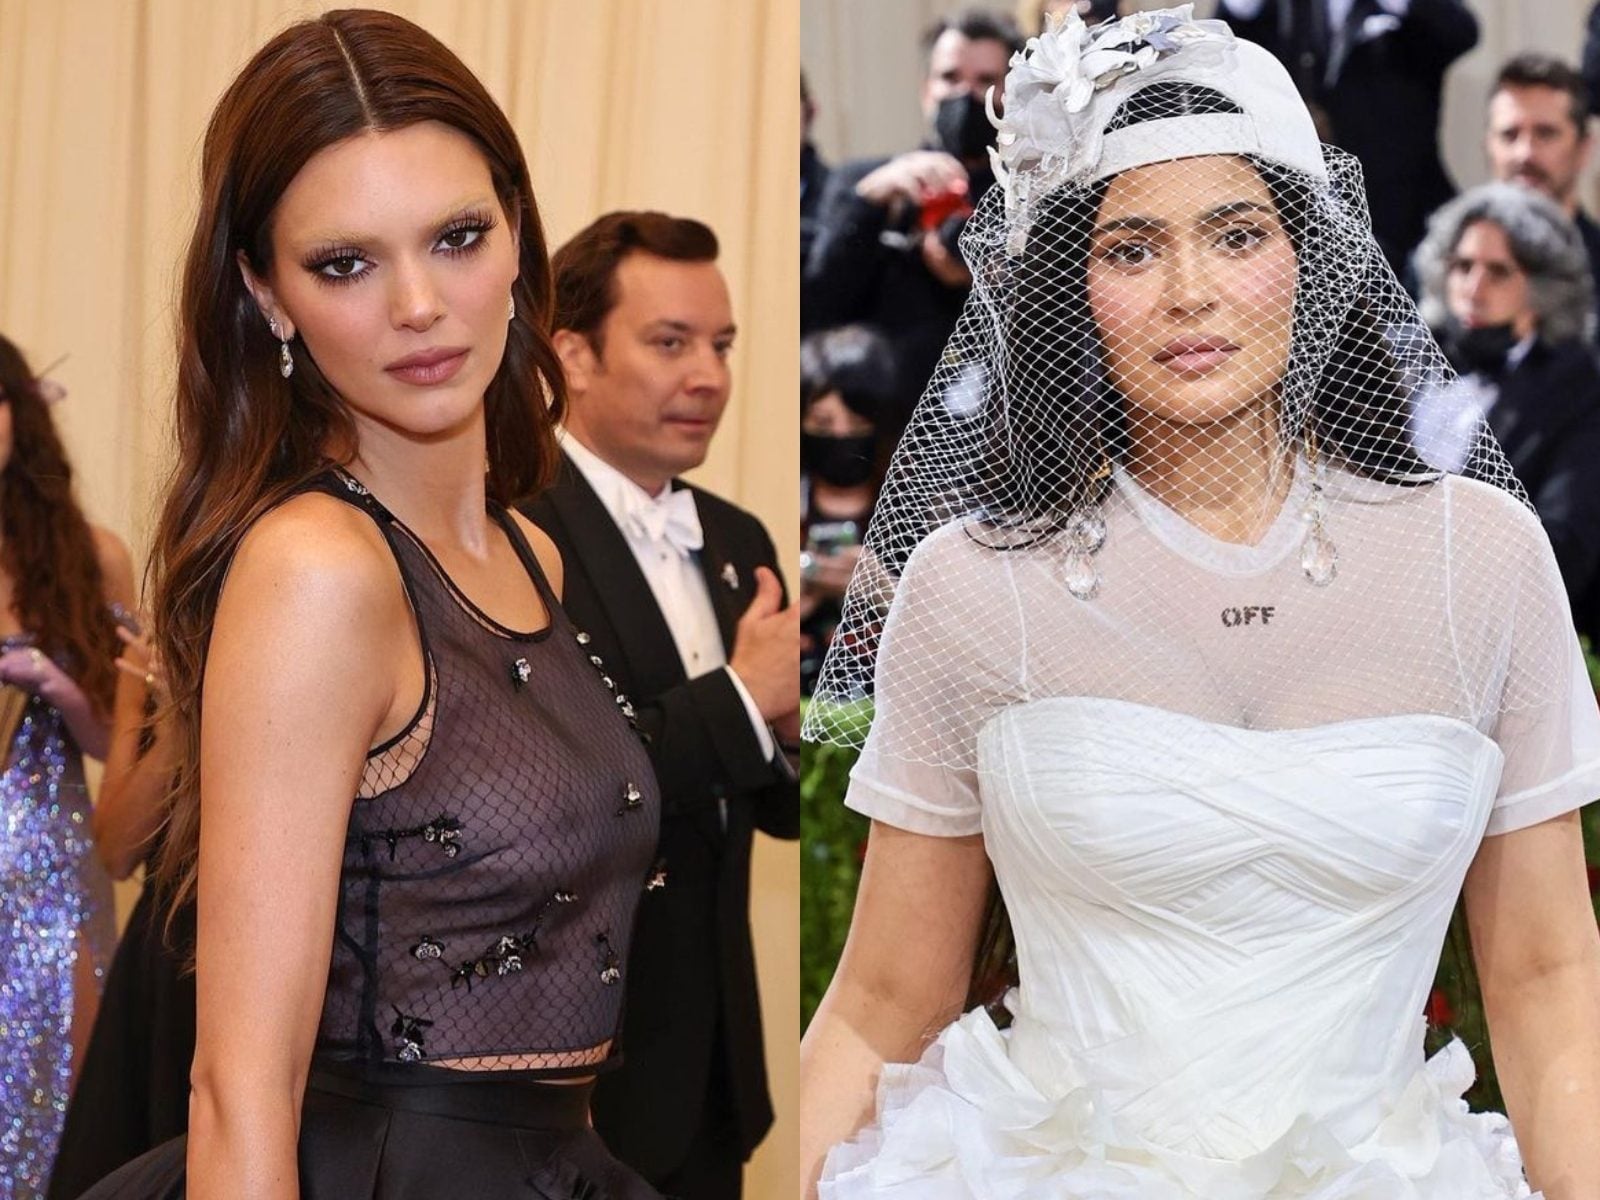 Kardashian-Jenner 2022 Met Gala Outfits: Prada, Off-White